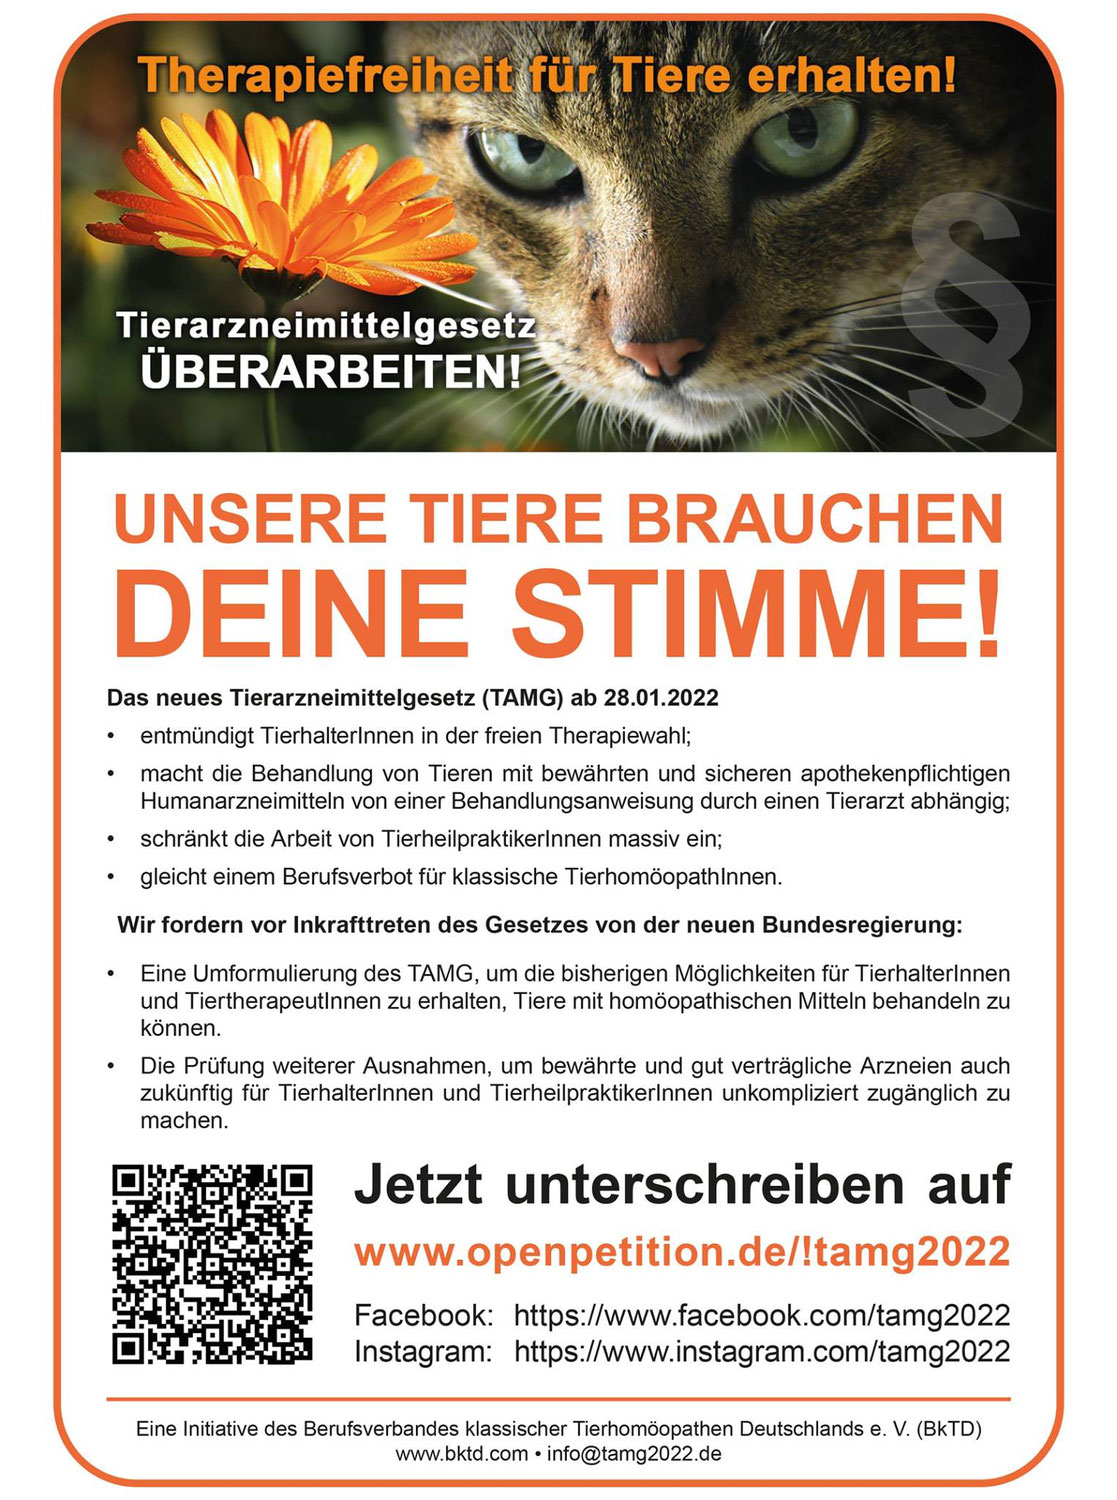 Therapiefreiheit für Tiere erhalten – Tierarzneimittelgesetz überarbeiten!